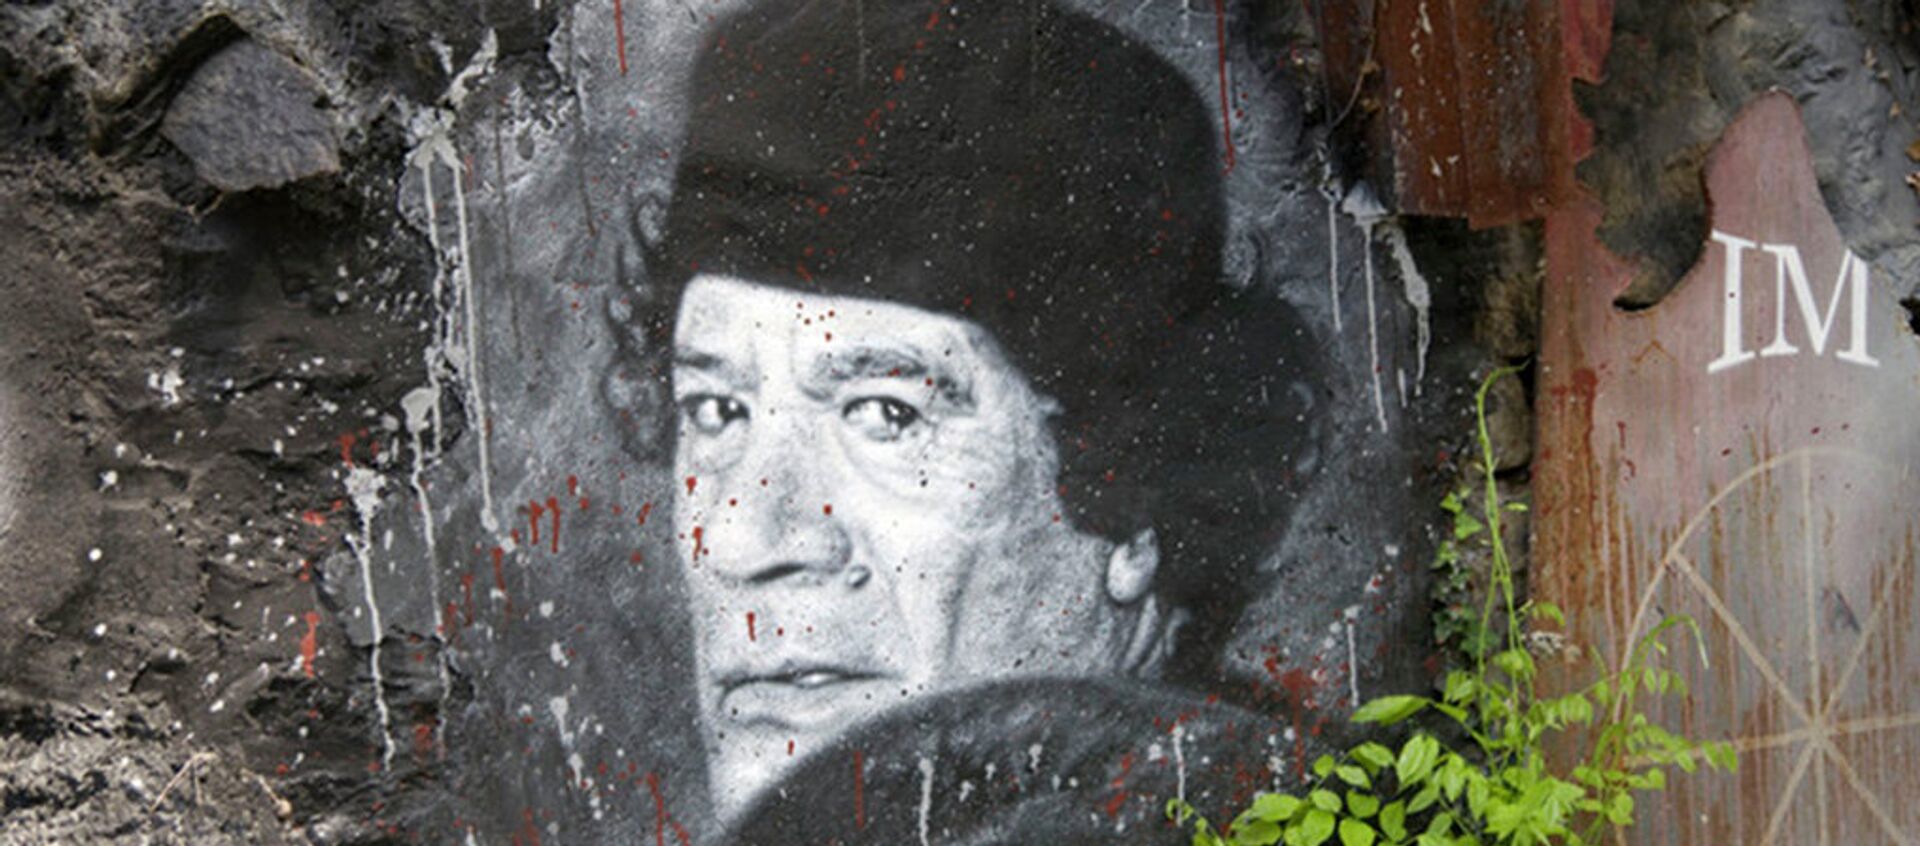 Графит бившег либијског вође  Муамера ал Гадафија у Сирту пре него што је убијен од стране НАТО-а побуне у 2011. години. - Sputnik Србија, 1920, 21.10.2015